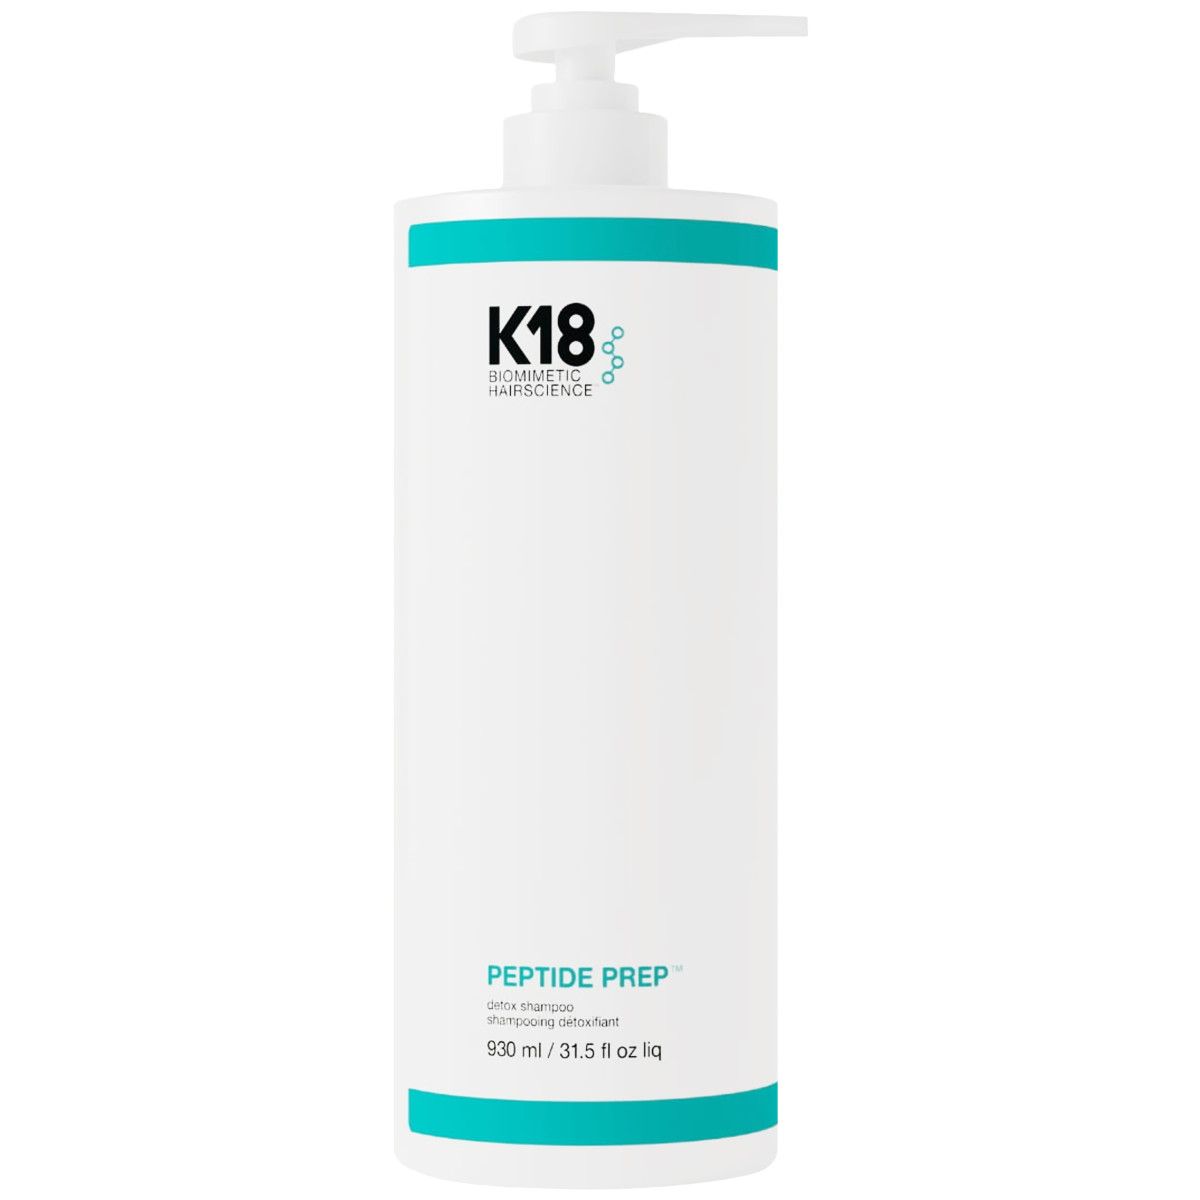 K18 Peptide Prep Detox Shampoo - Detoksykujący szampon do skóry głowy, 930ml